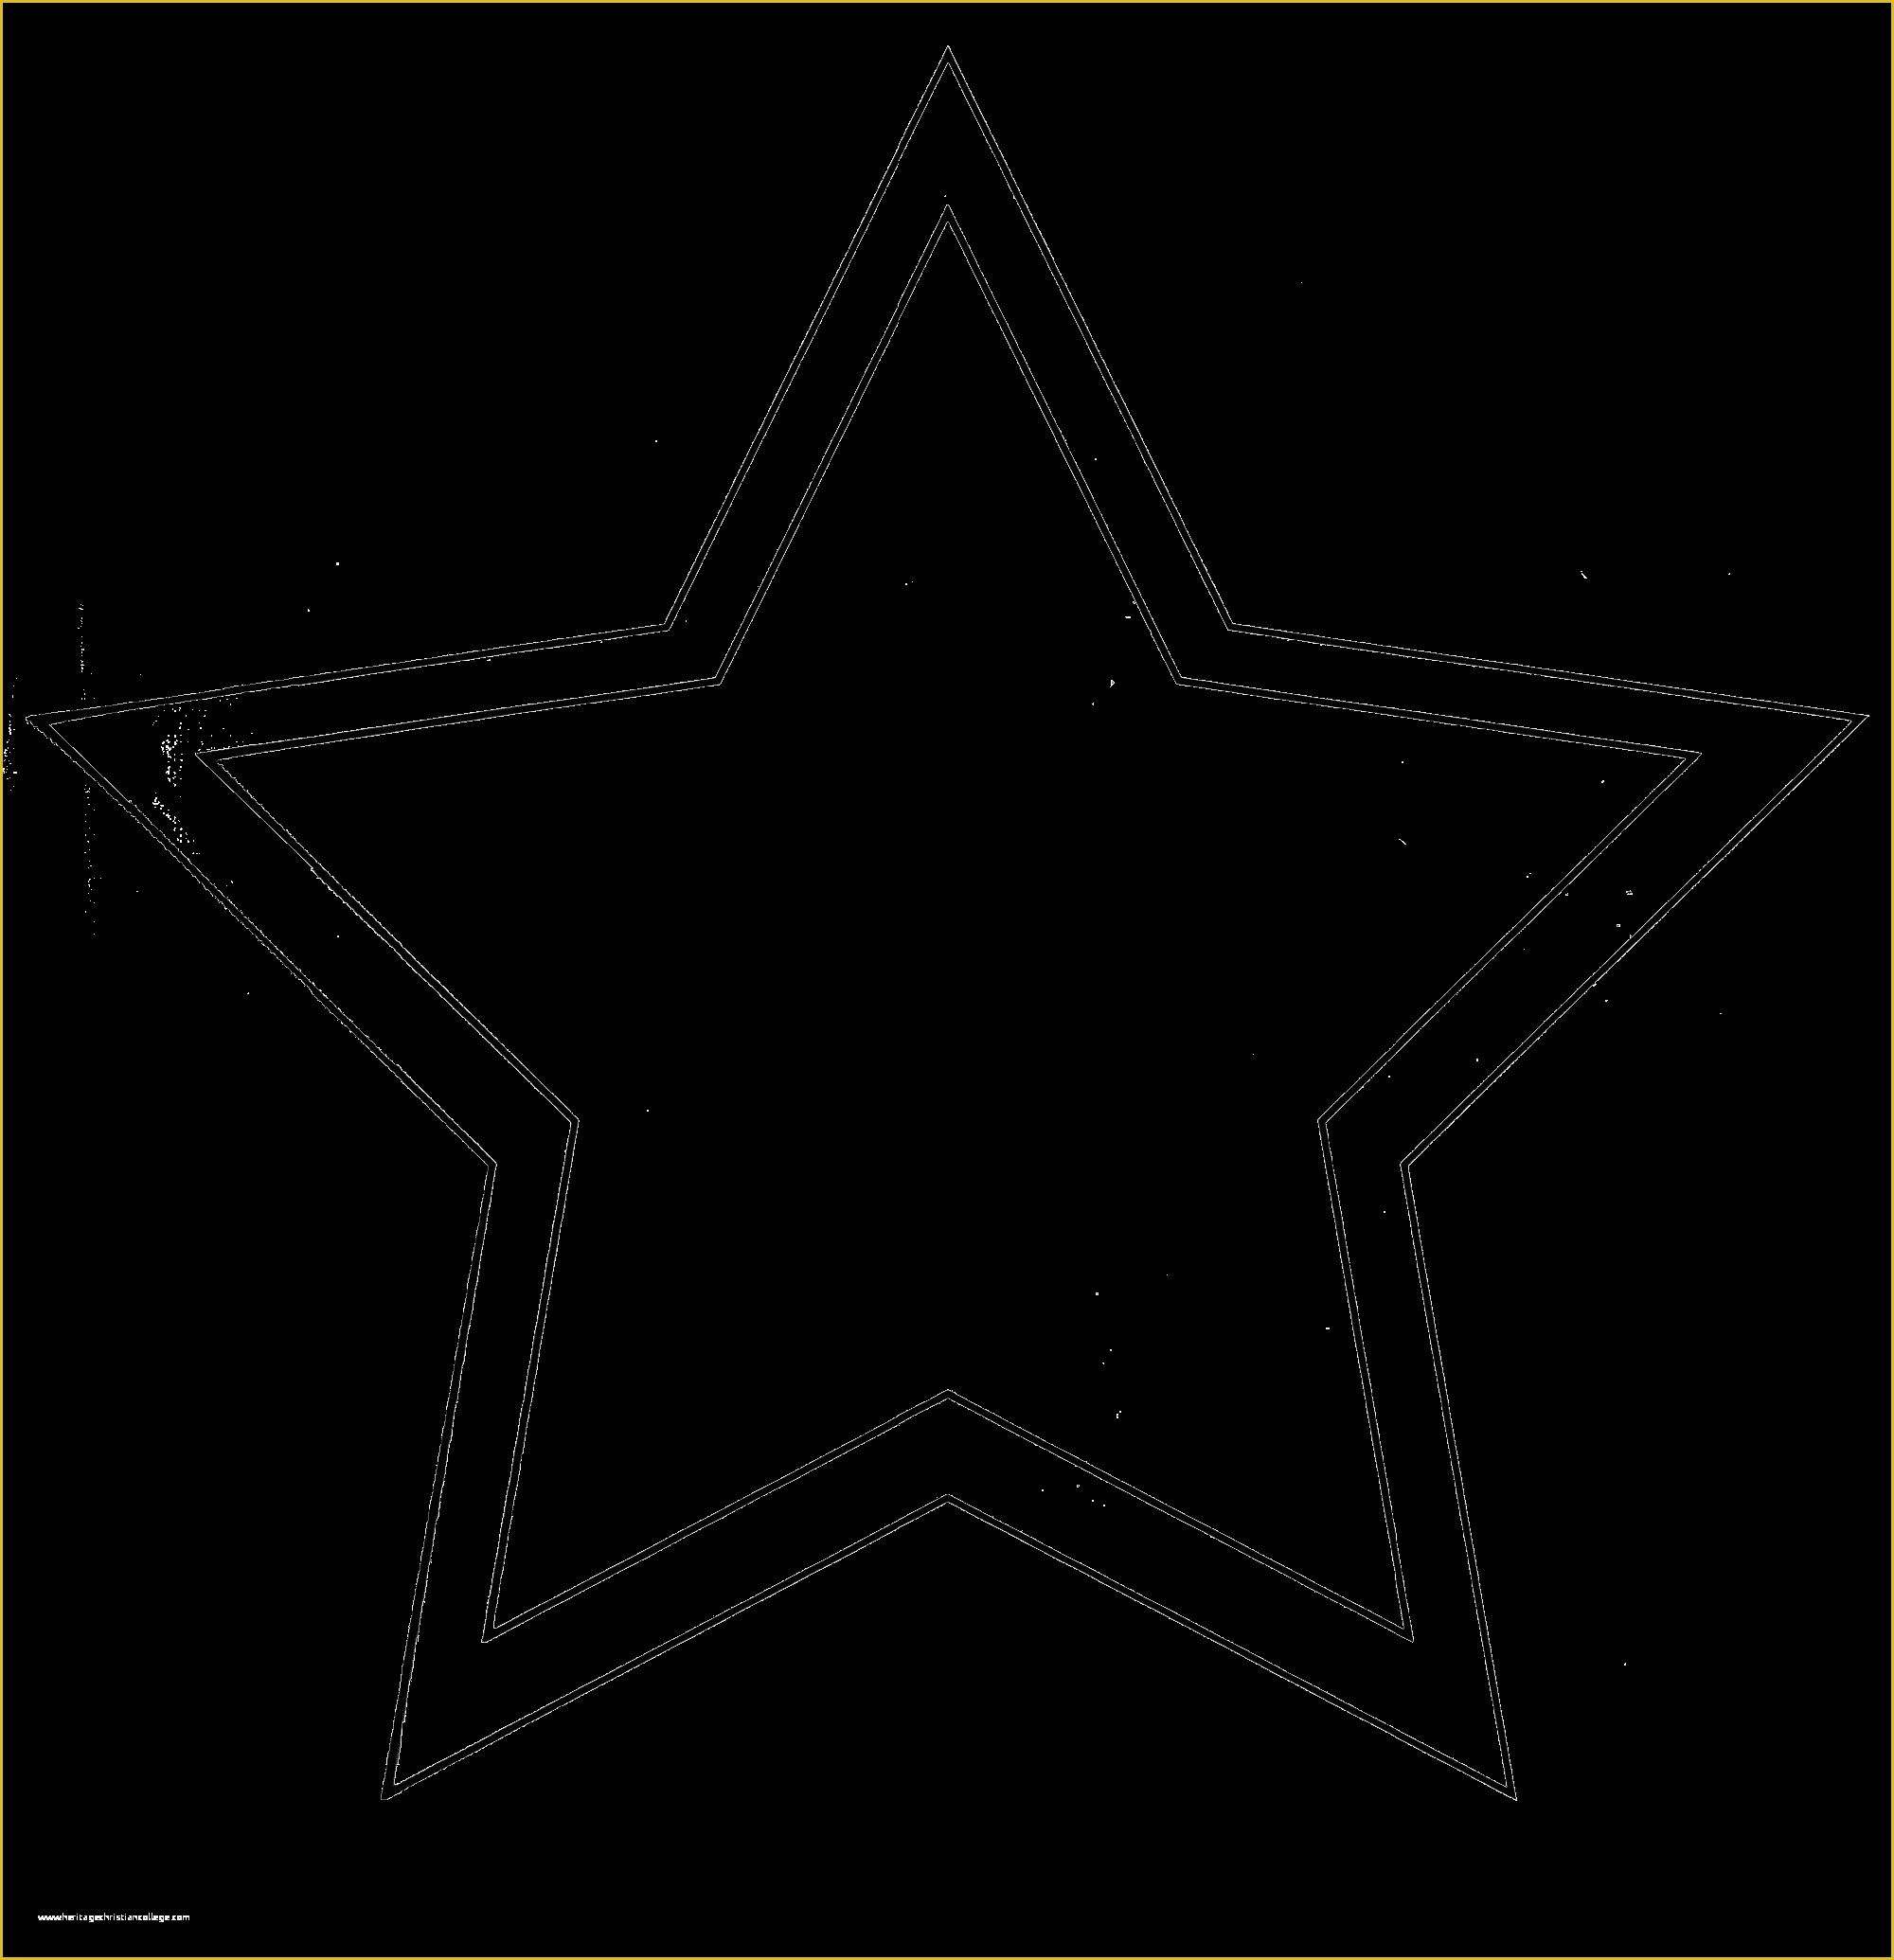 Free Printable Star Template Of Star Shape Templates for Christmas – Fun for Christmas